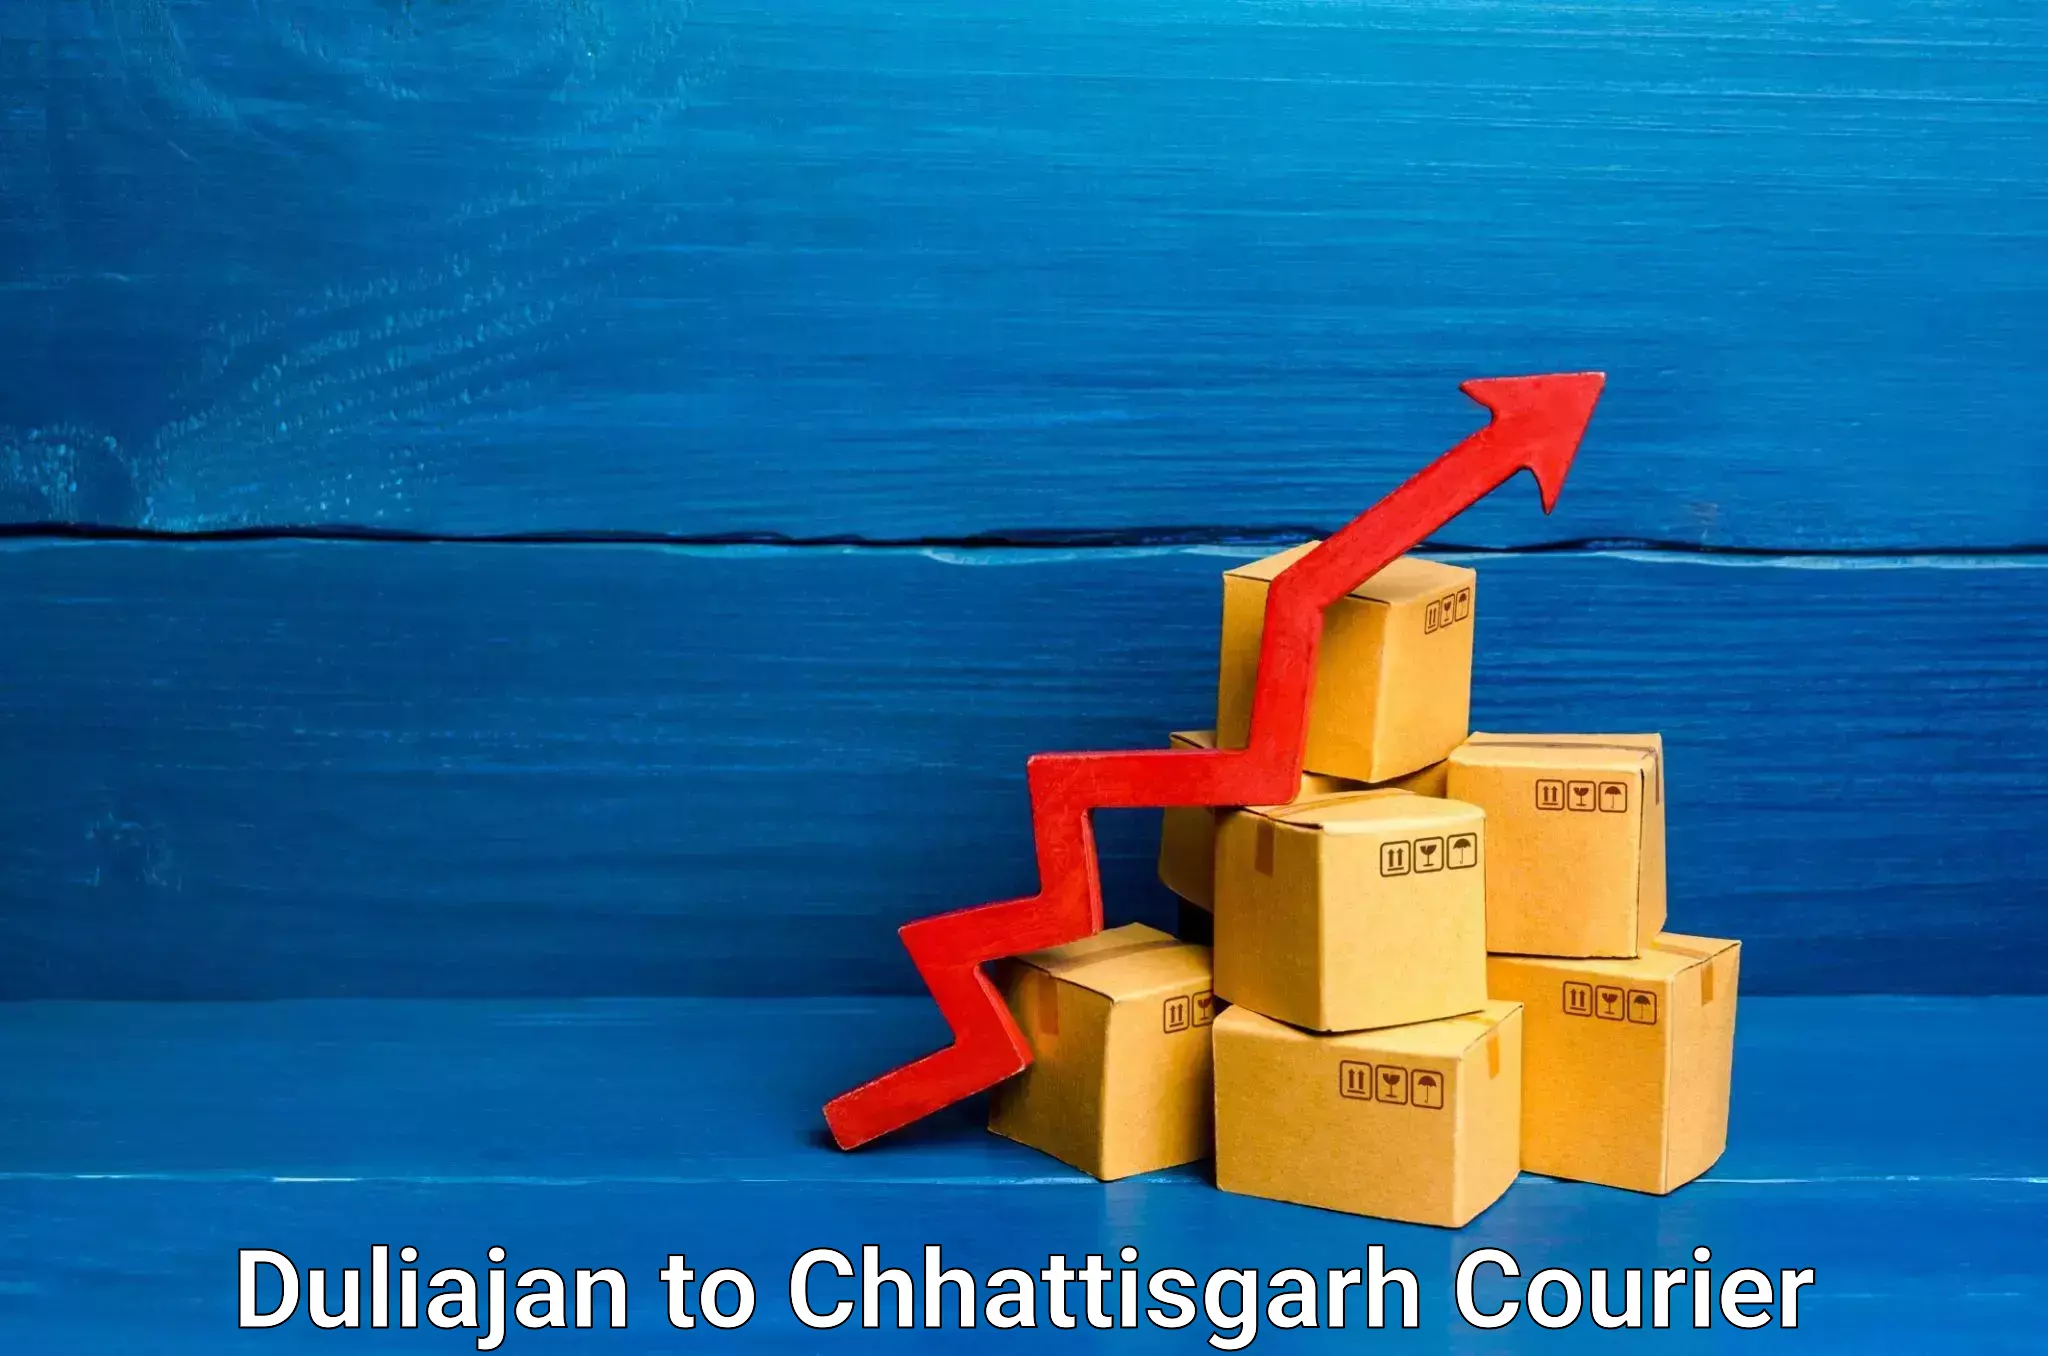 Reliable delivery network Duliajan to Chhattisgarh